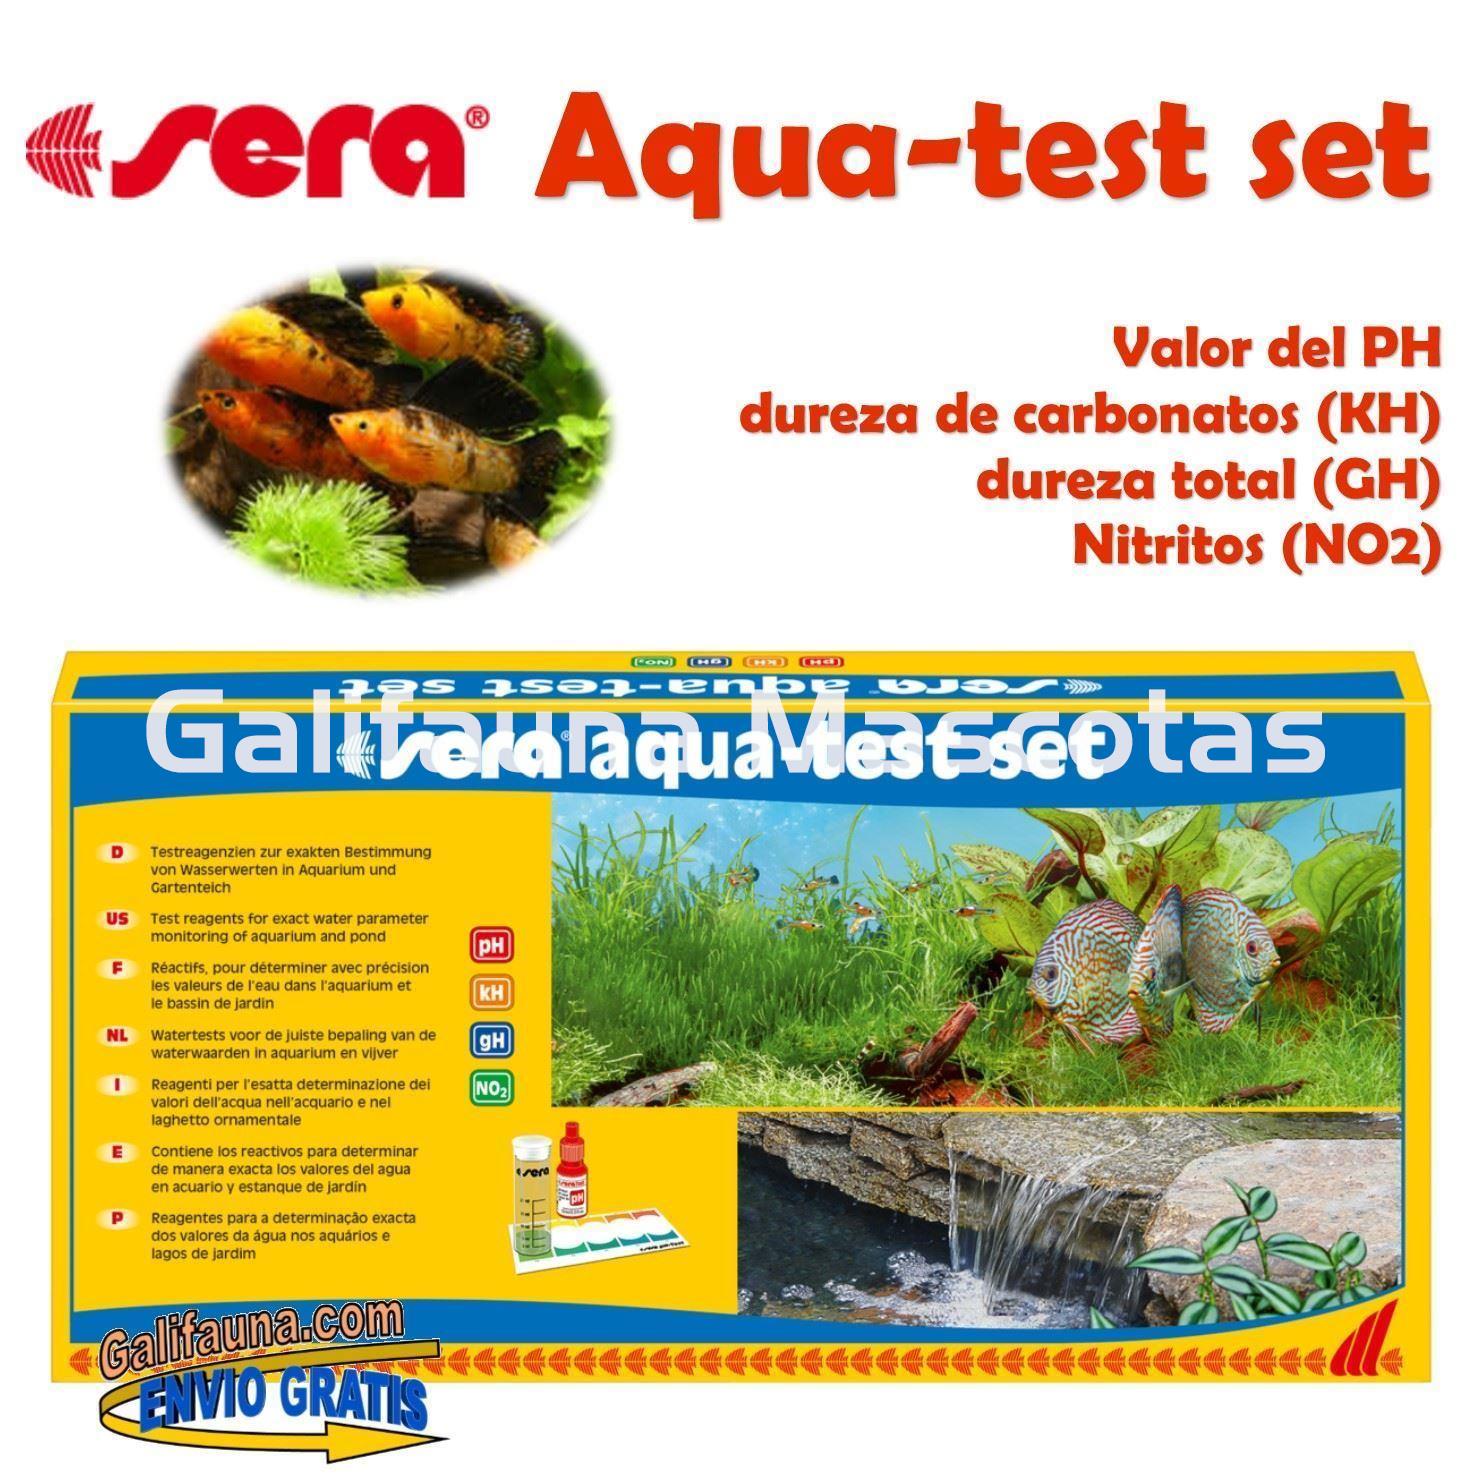 SERA Aqua-test set. Set de analisis para aquarios - Imagen 1